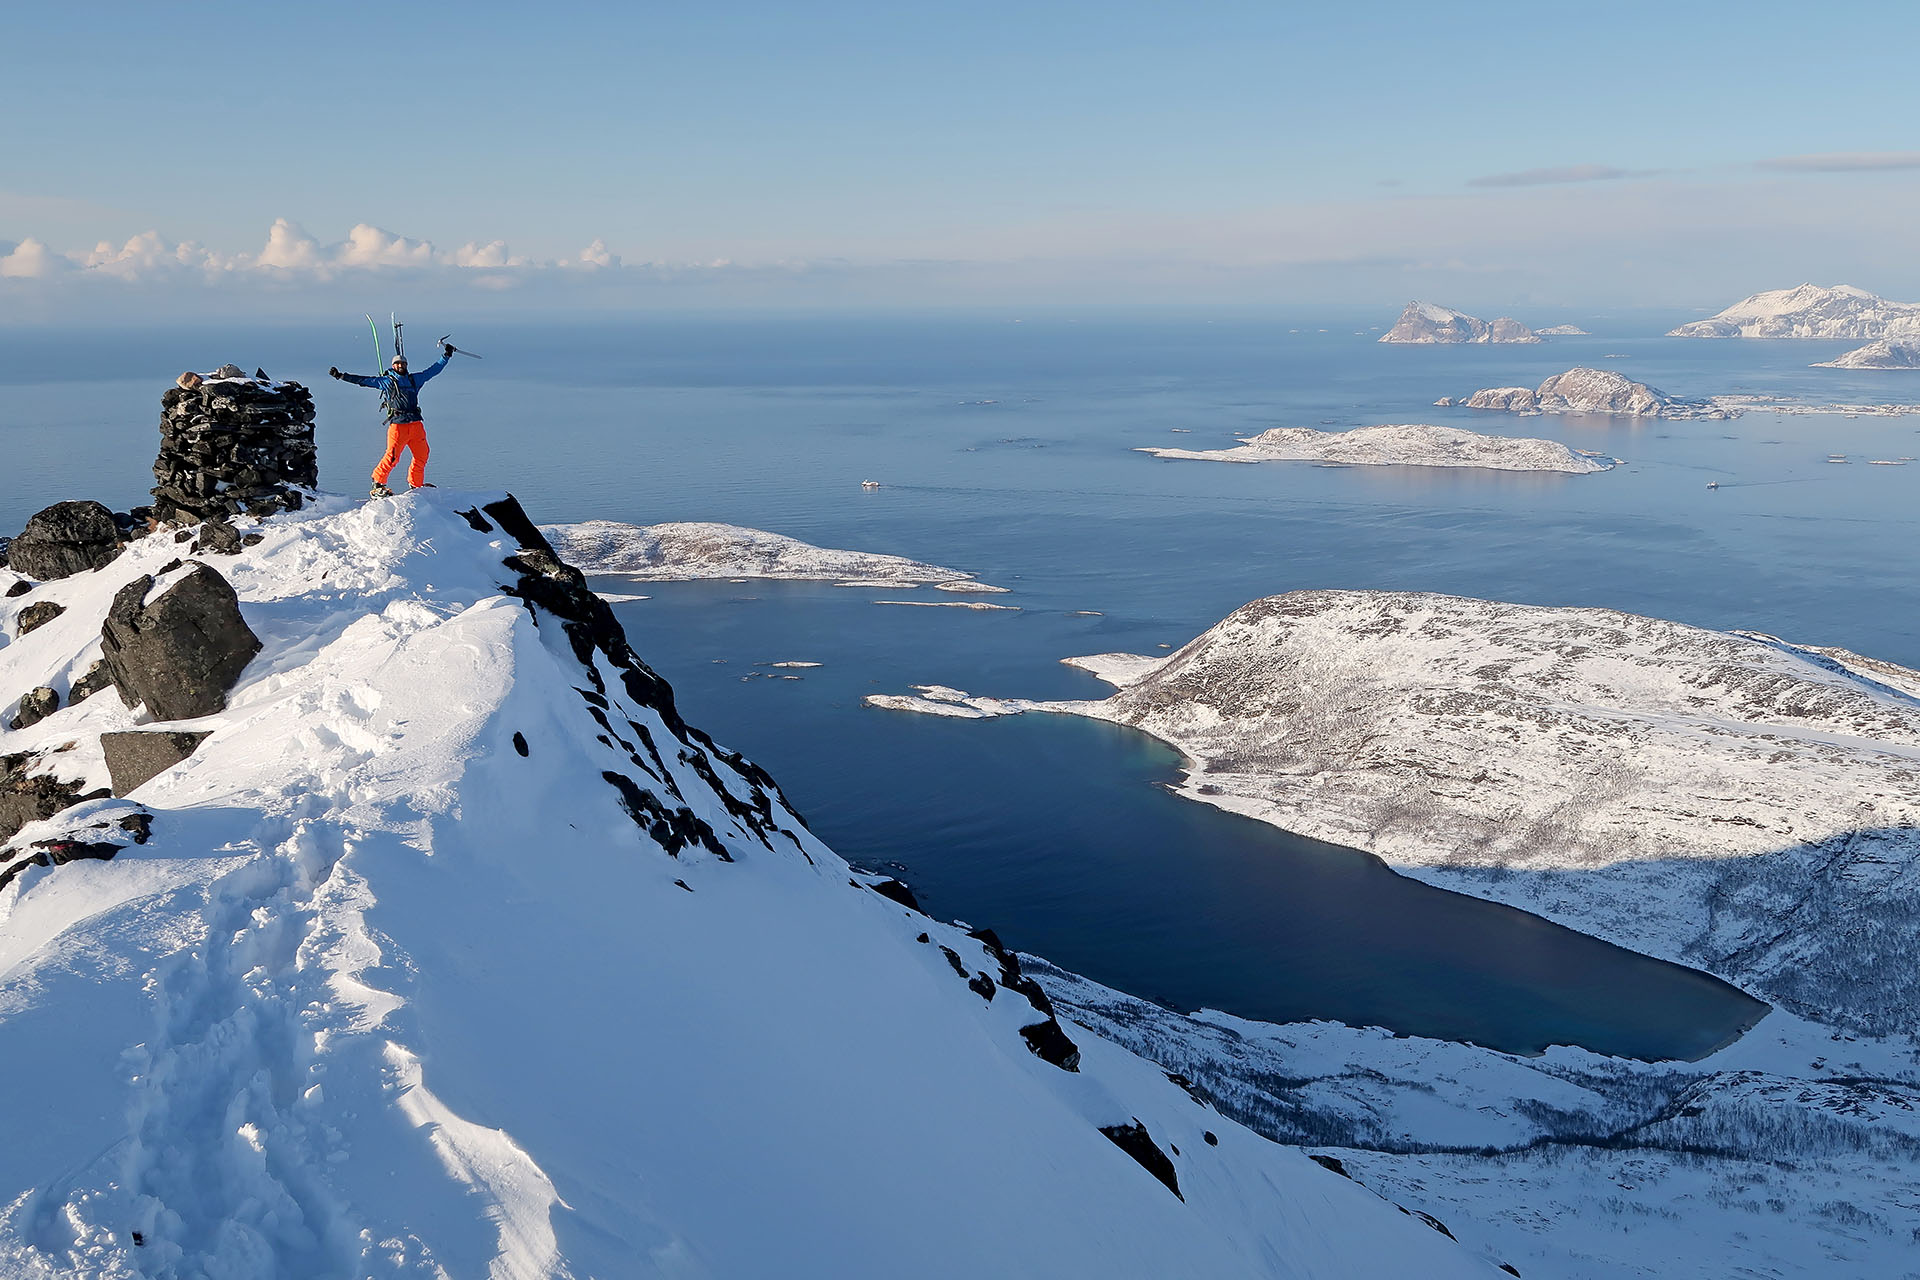 Turnosmučarska avantura na norveškem - otok Senja